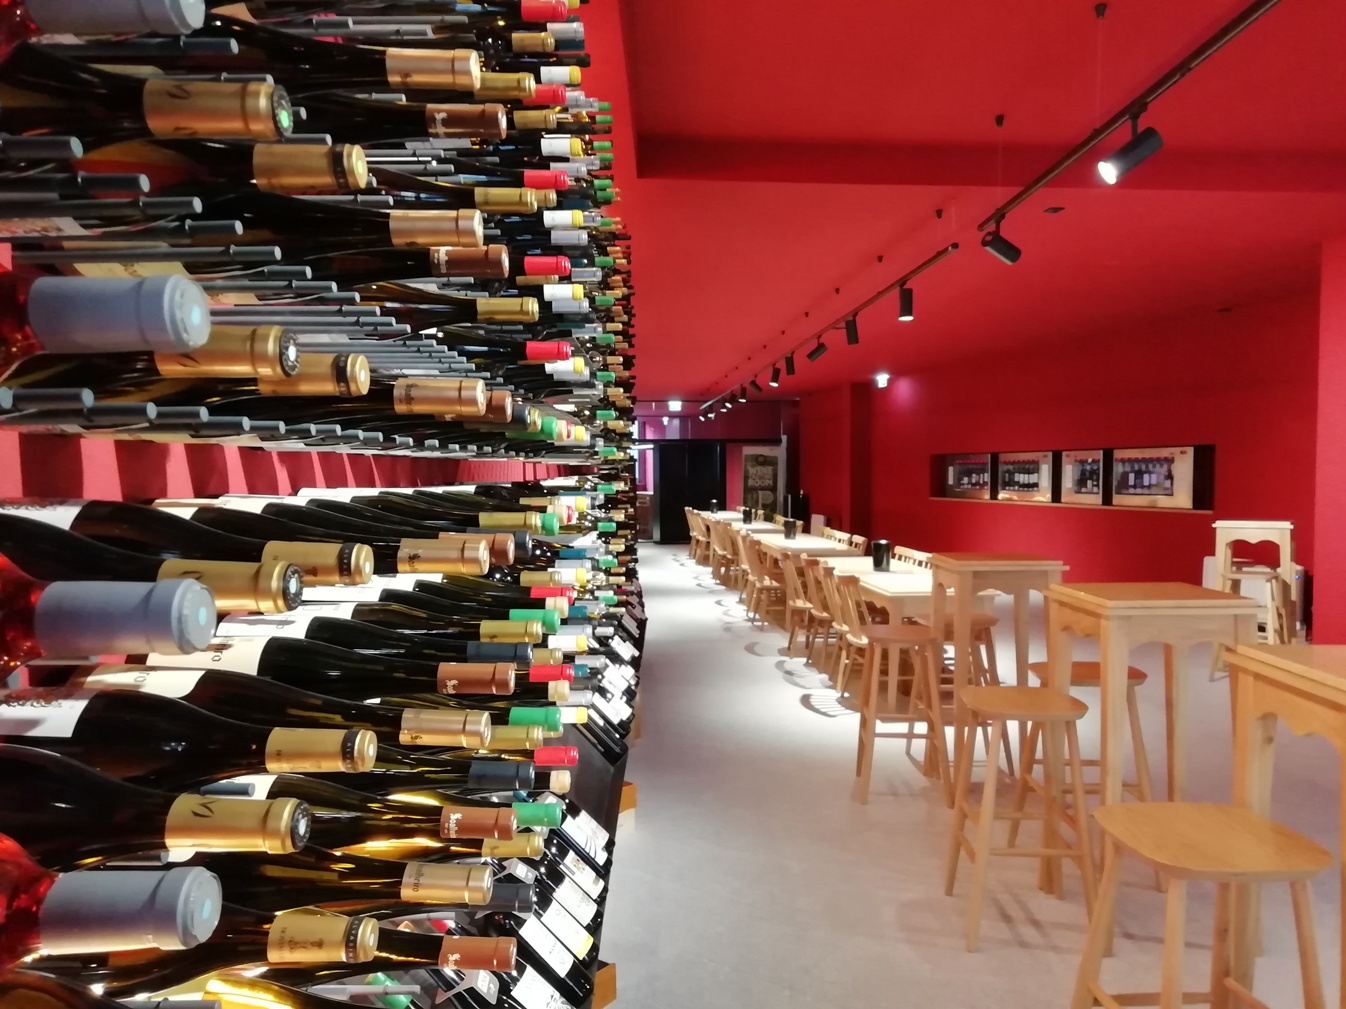 Wines of Portugal Tasting Room